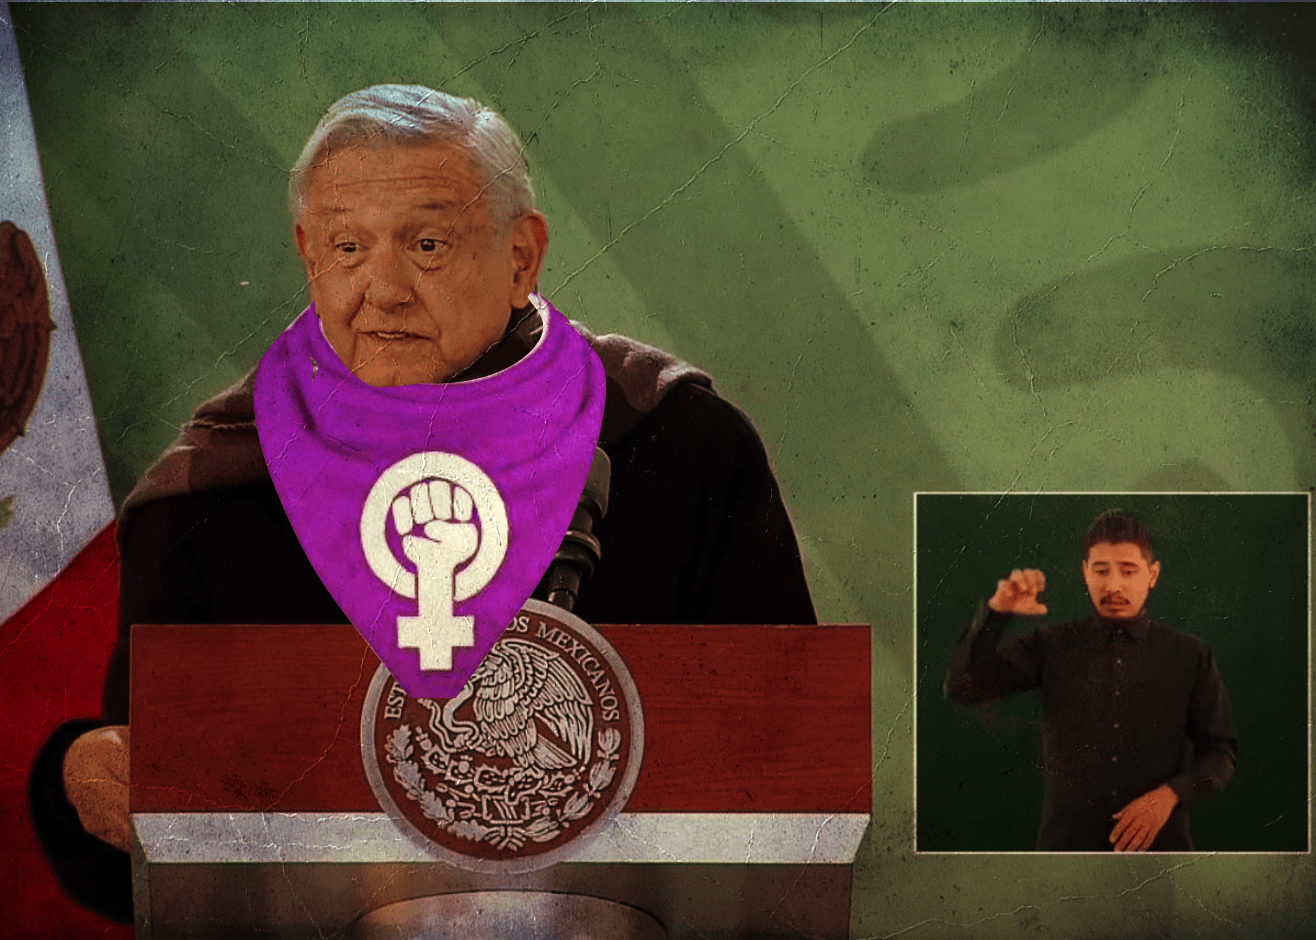 el presidente Lóepz Obrador, casi casi el padre del feminismo